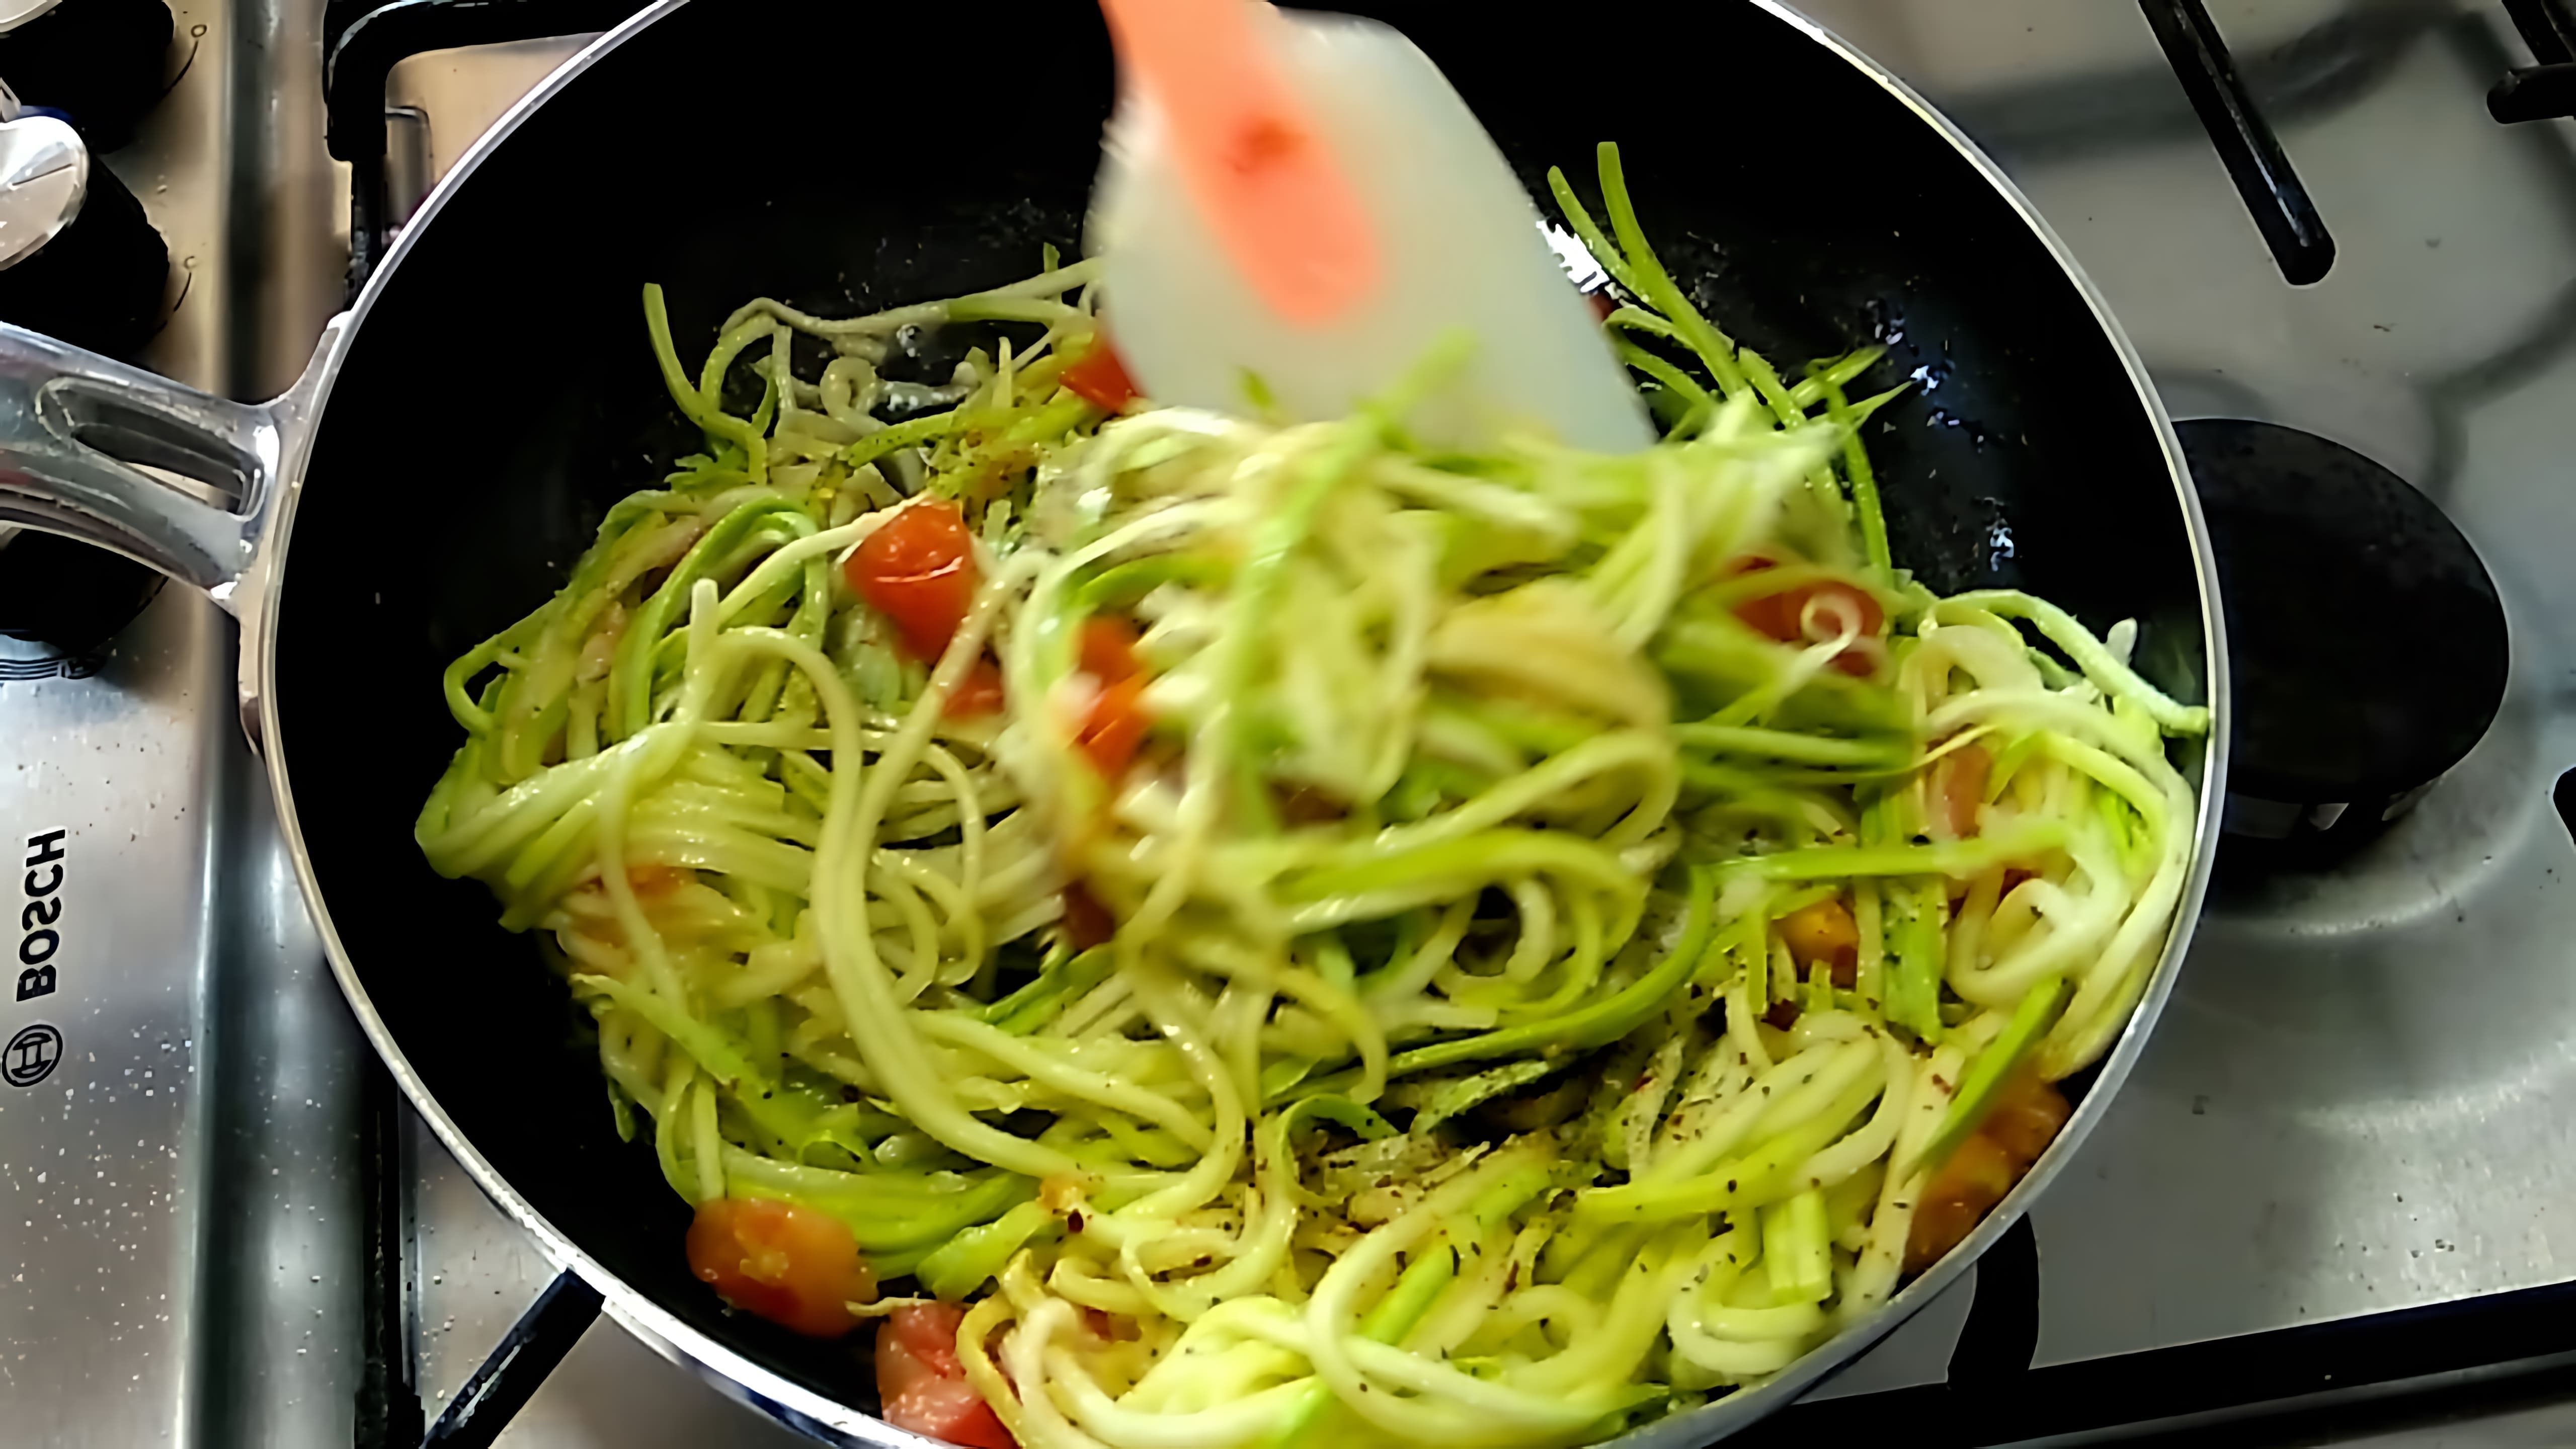 В этом видео демонстрируется процесс приготовления спагетти из кабачков